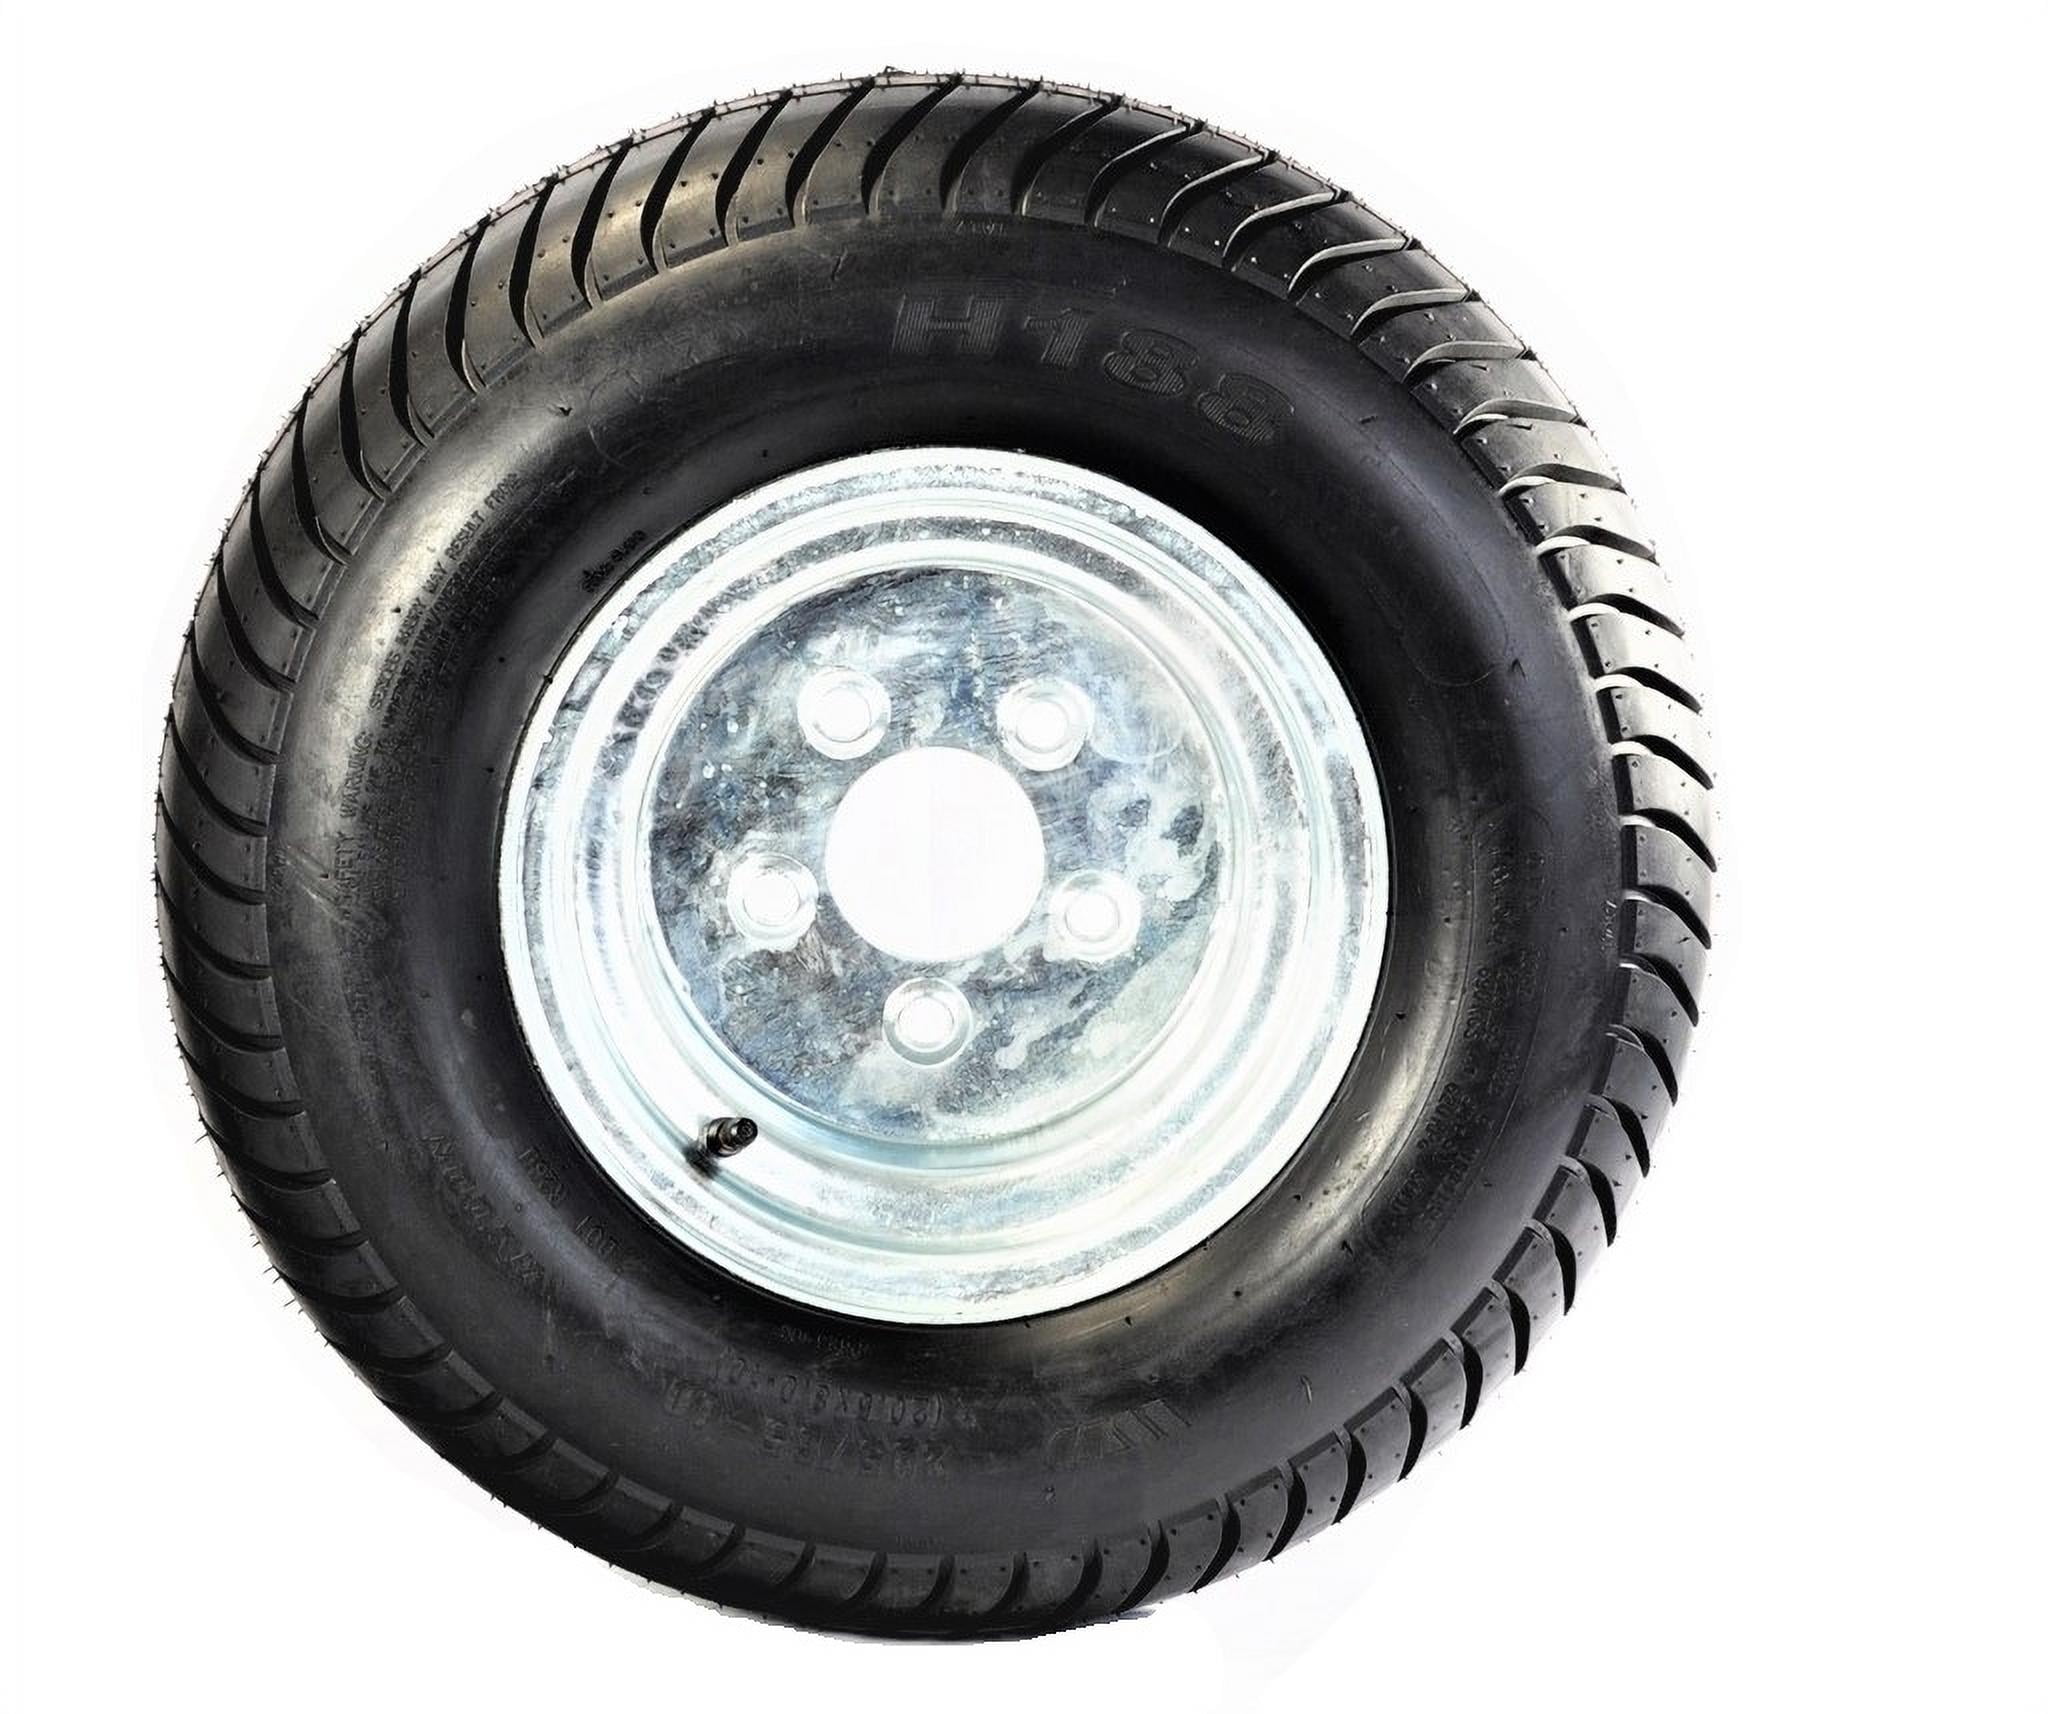 20.5x8.0-10 Trailer Tire & Rim 20.5/8-10 10 Ply 5 Lug White Spoke Pattern P825 Tubeless Bias Tires 